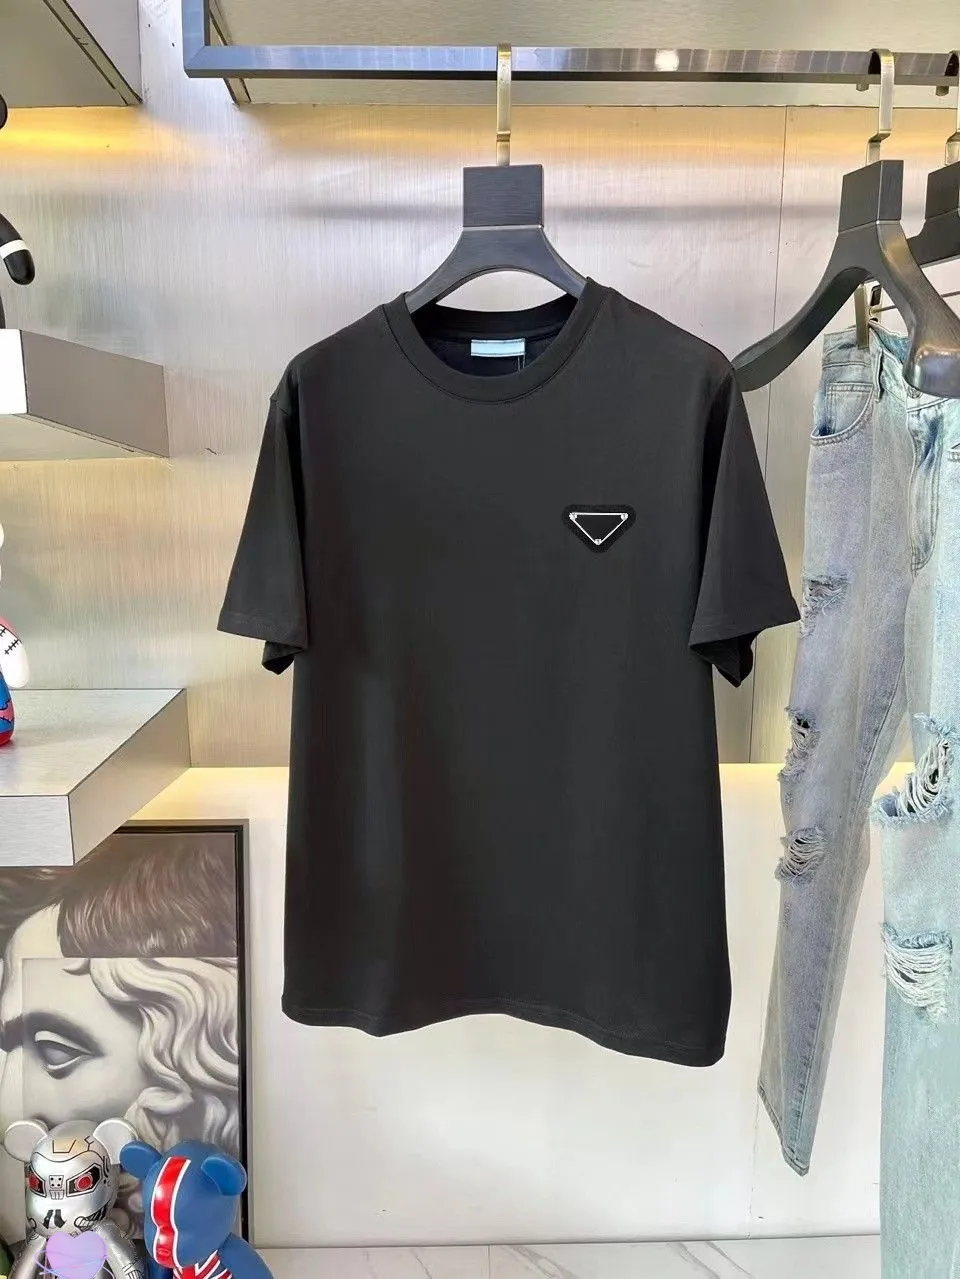 Парижский модный бренд-дизайнер Мужские футболки Известный дизайнер Футболки из хлопка с буквенным принтом 2B Модный спортивный туризм для мужчин и женщин футболки Рубашки в стиле хип-хоп